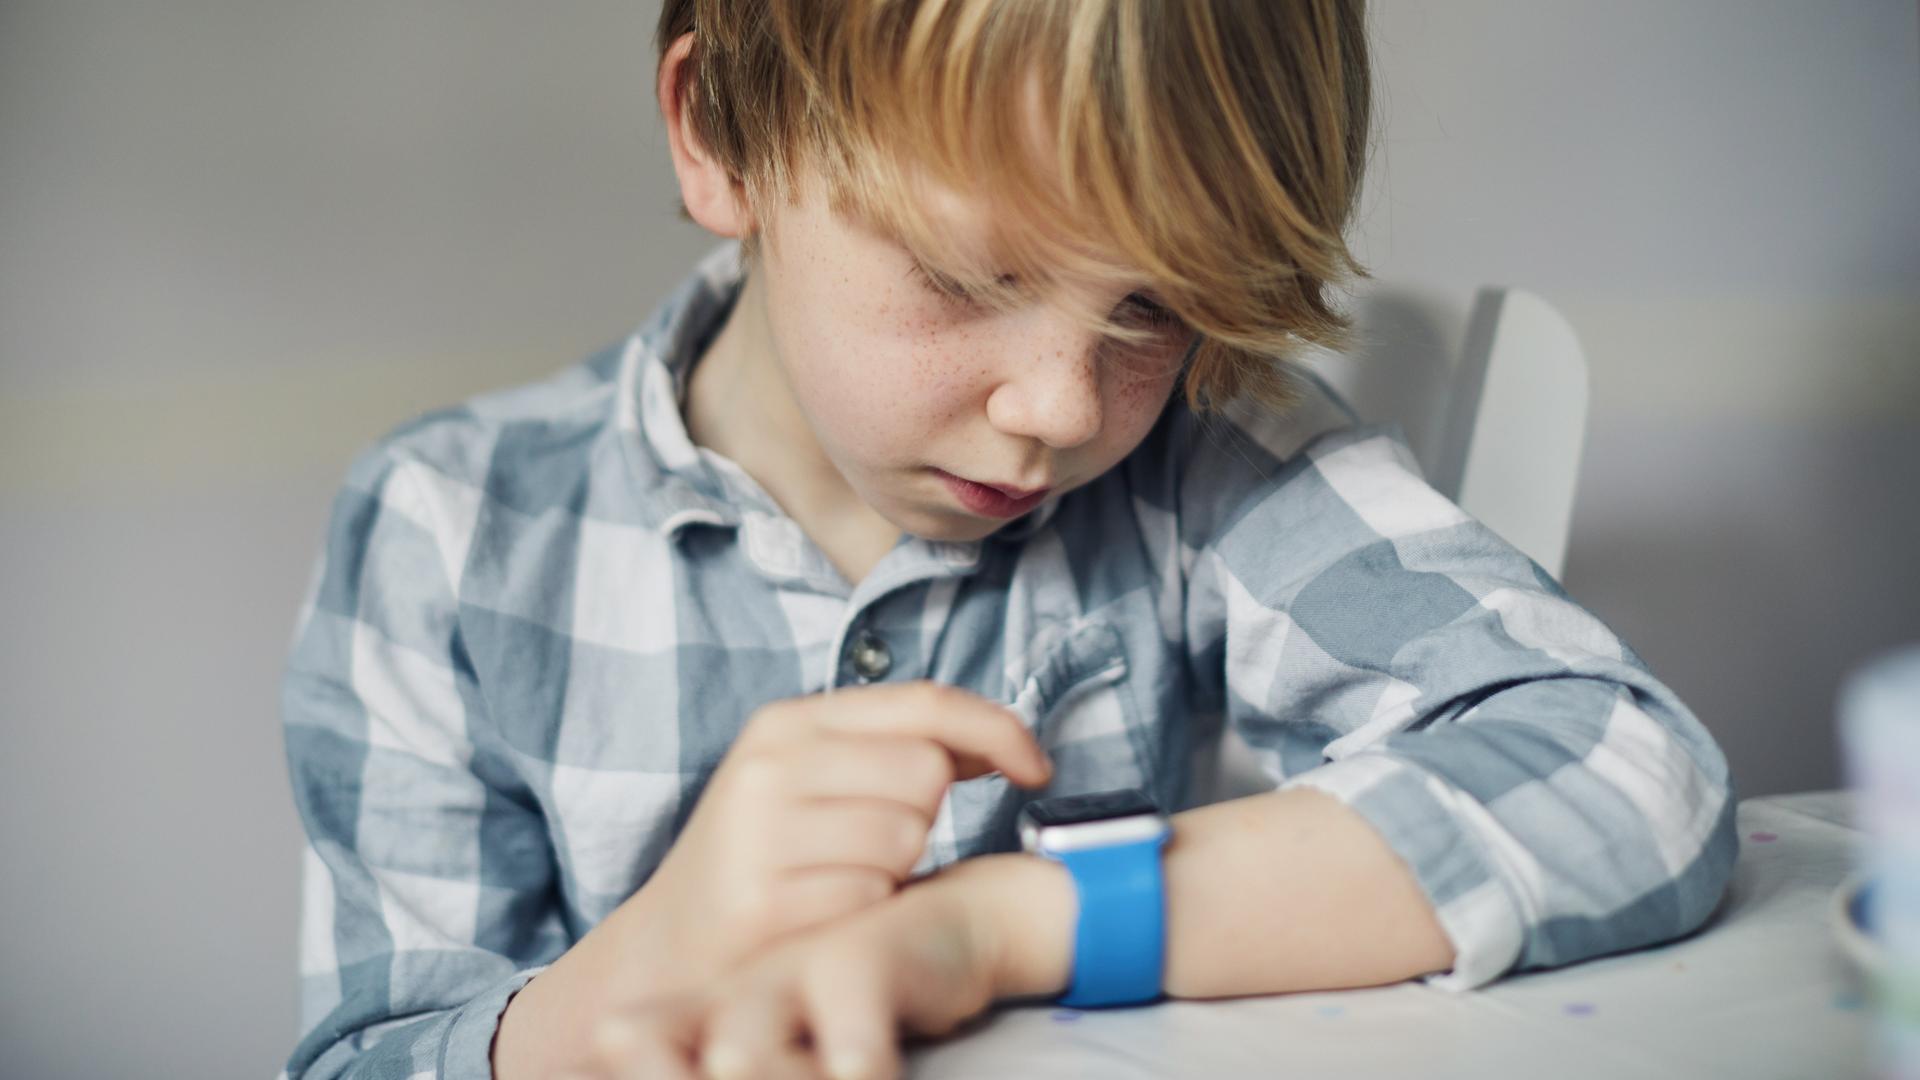 Ein Junge schaut auf sein Handgelenk wo er eine Smartwatch trägt.